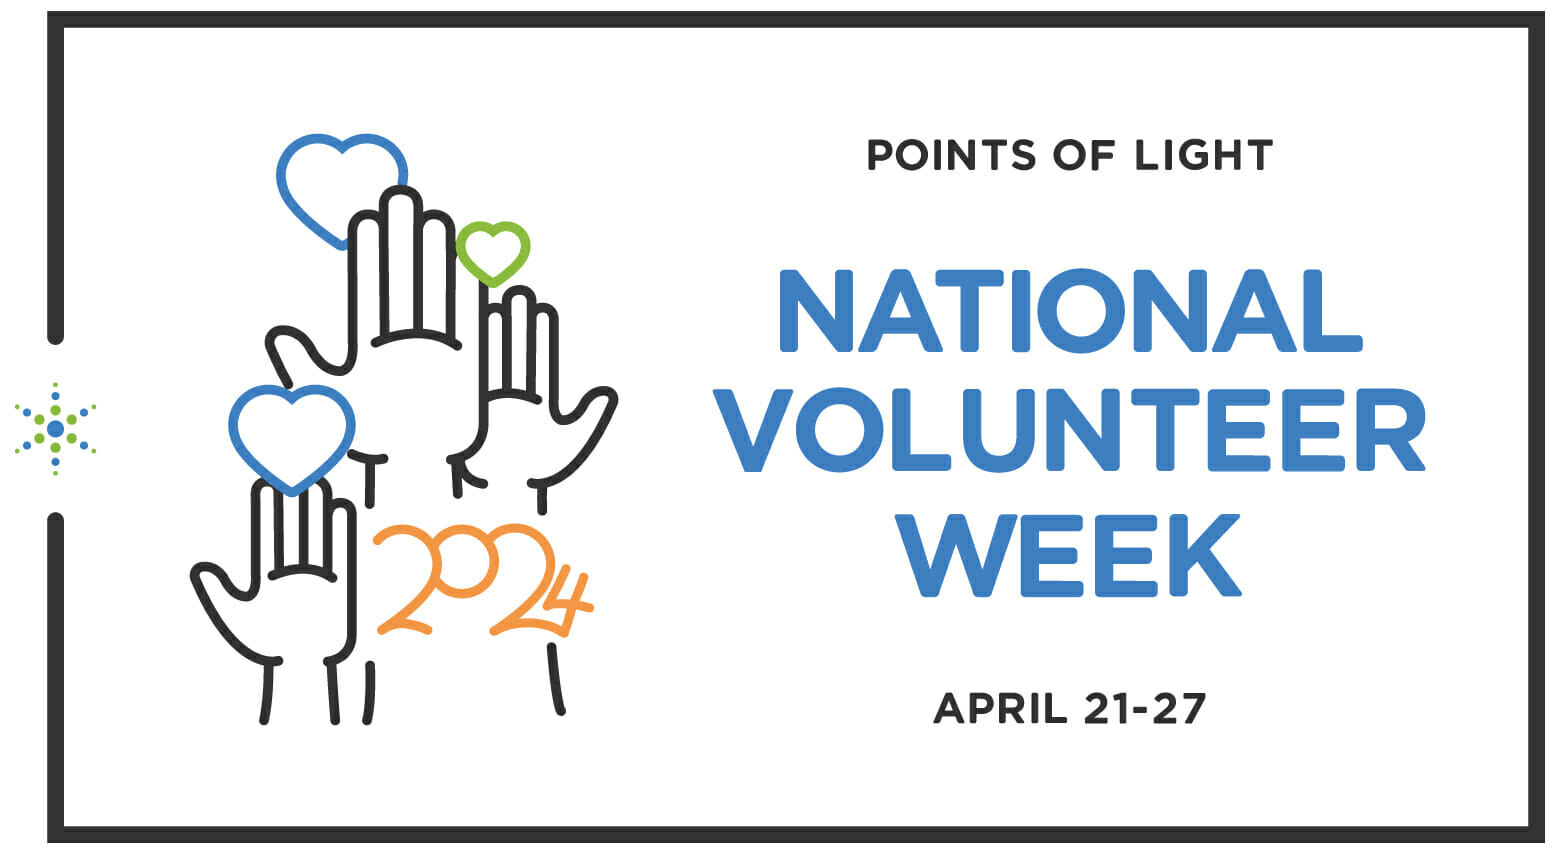 National Volunteer Week Points of Light